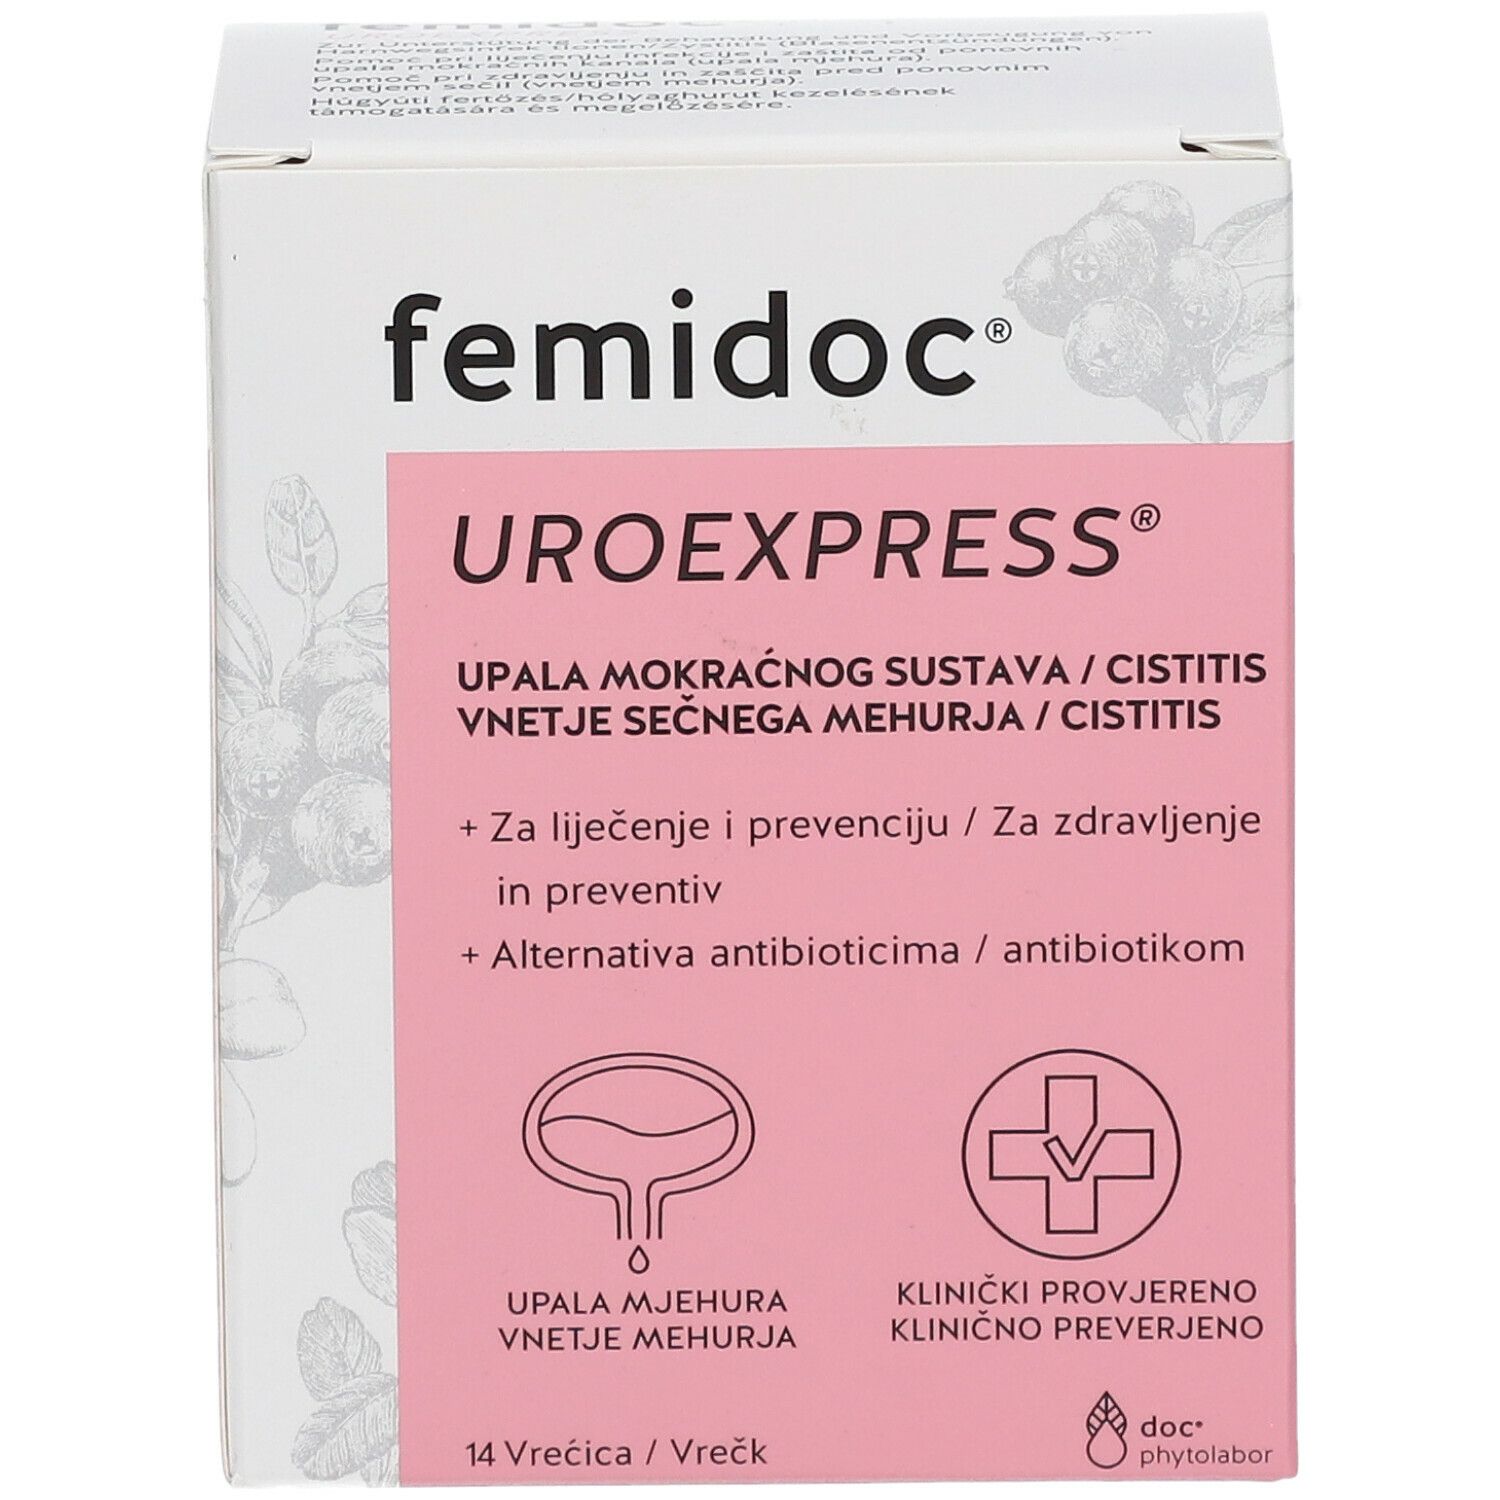 femidoc® UROEXPRESS®